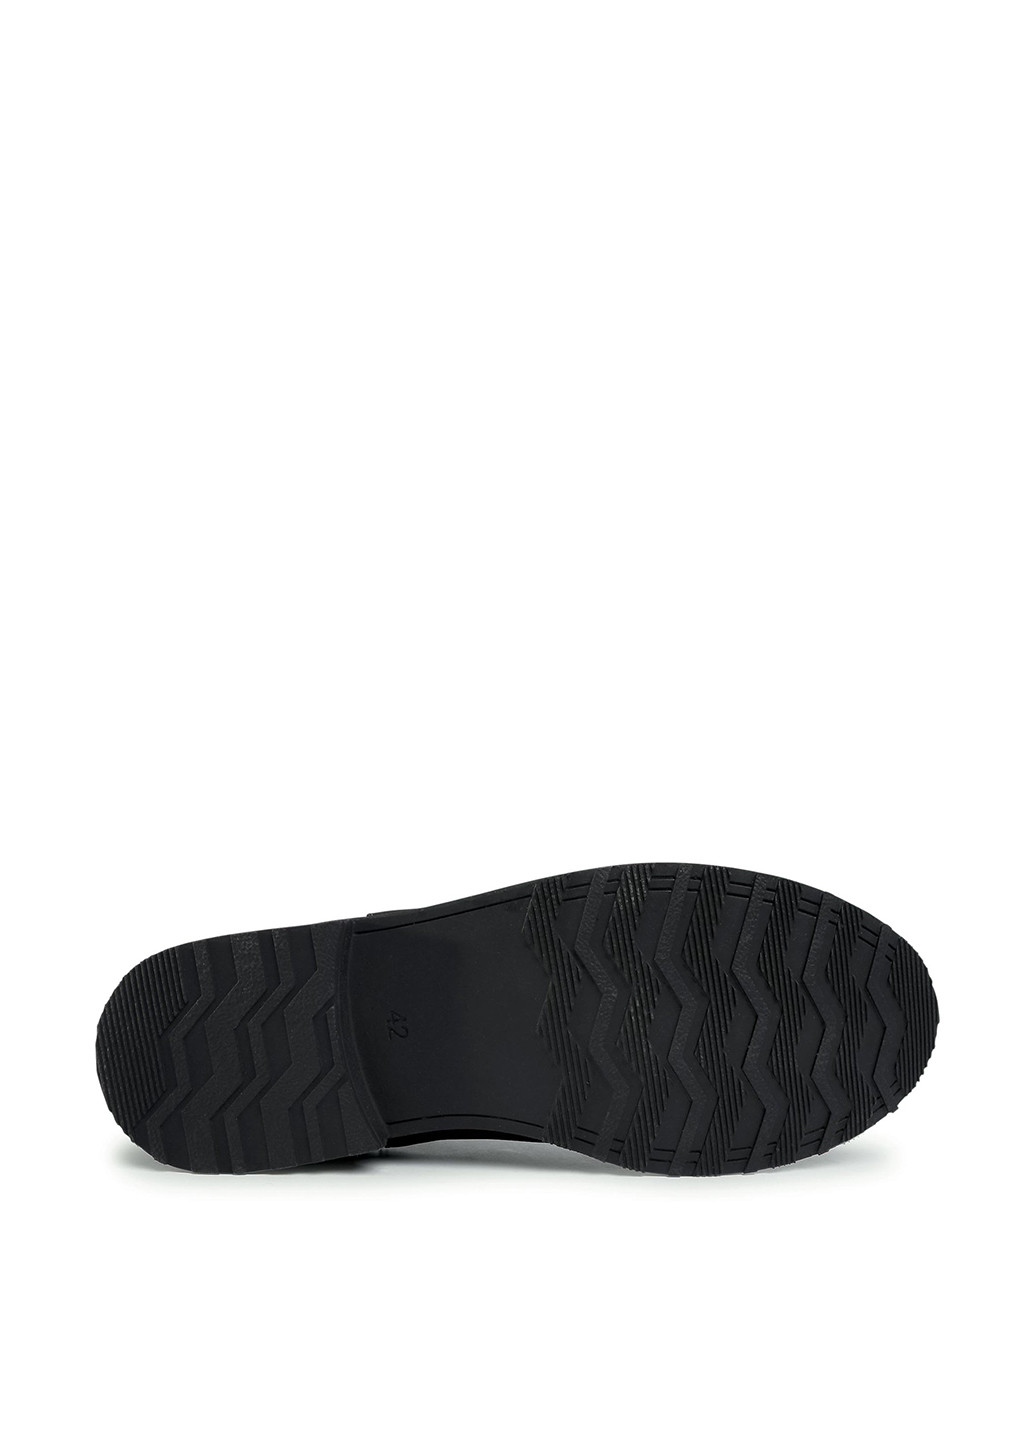 Черные осенние черевики lasocki for men mi08-c307-250-02 челси Lasocki for men